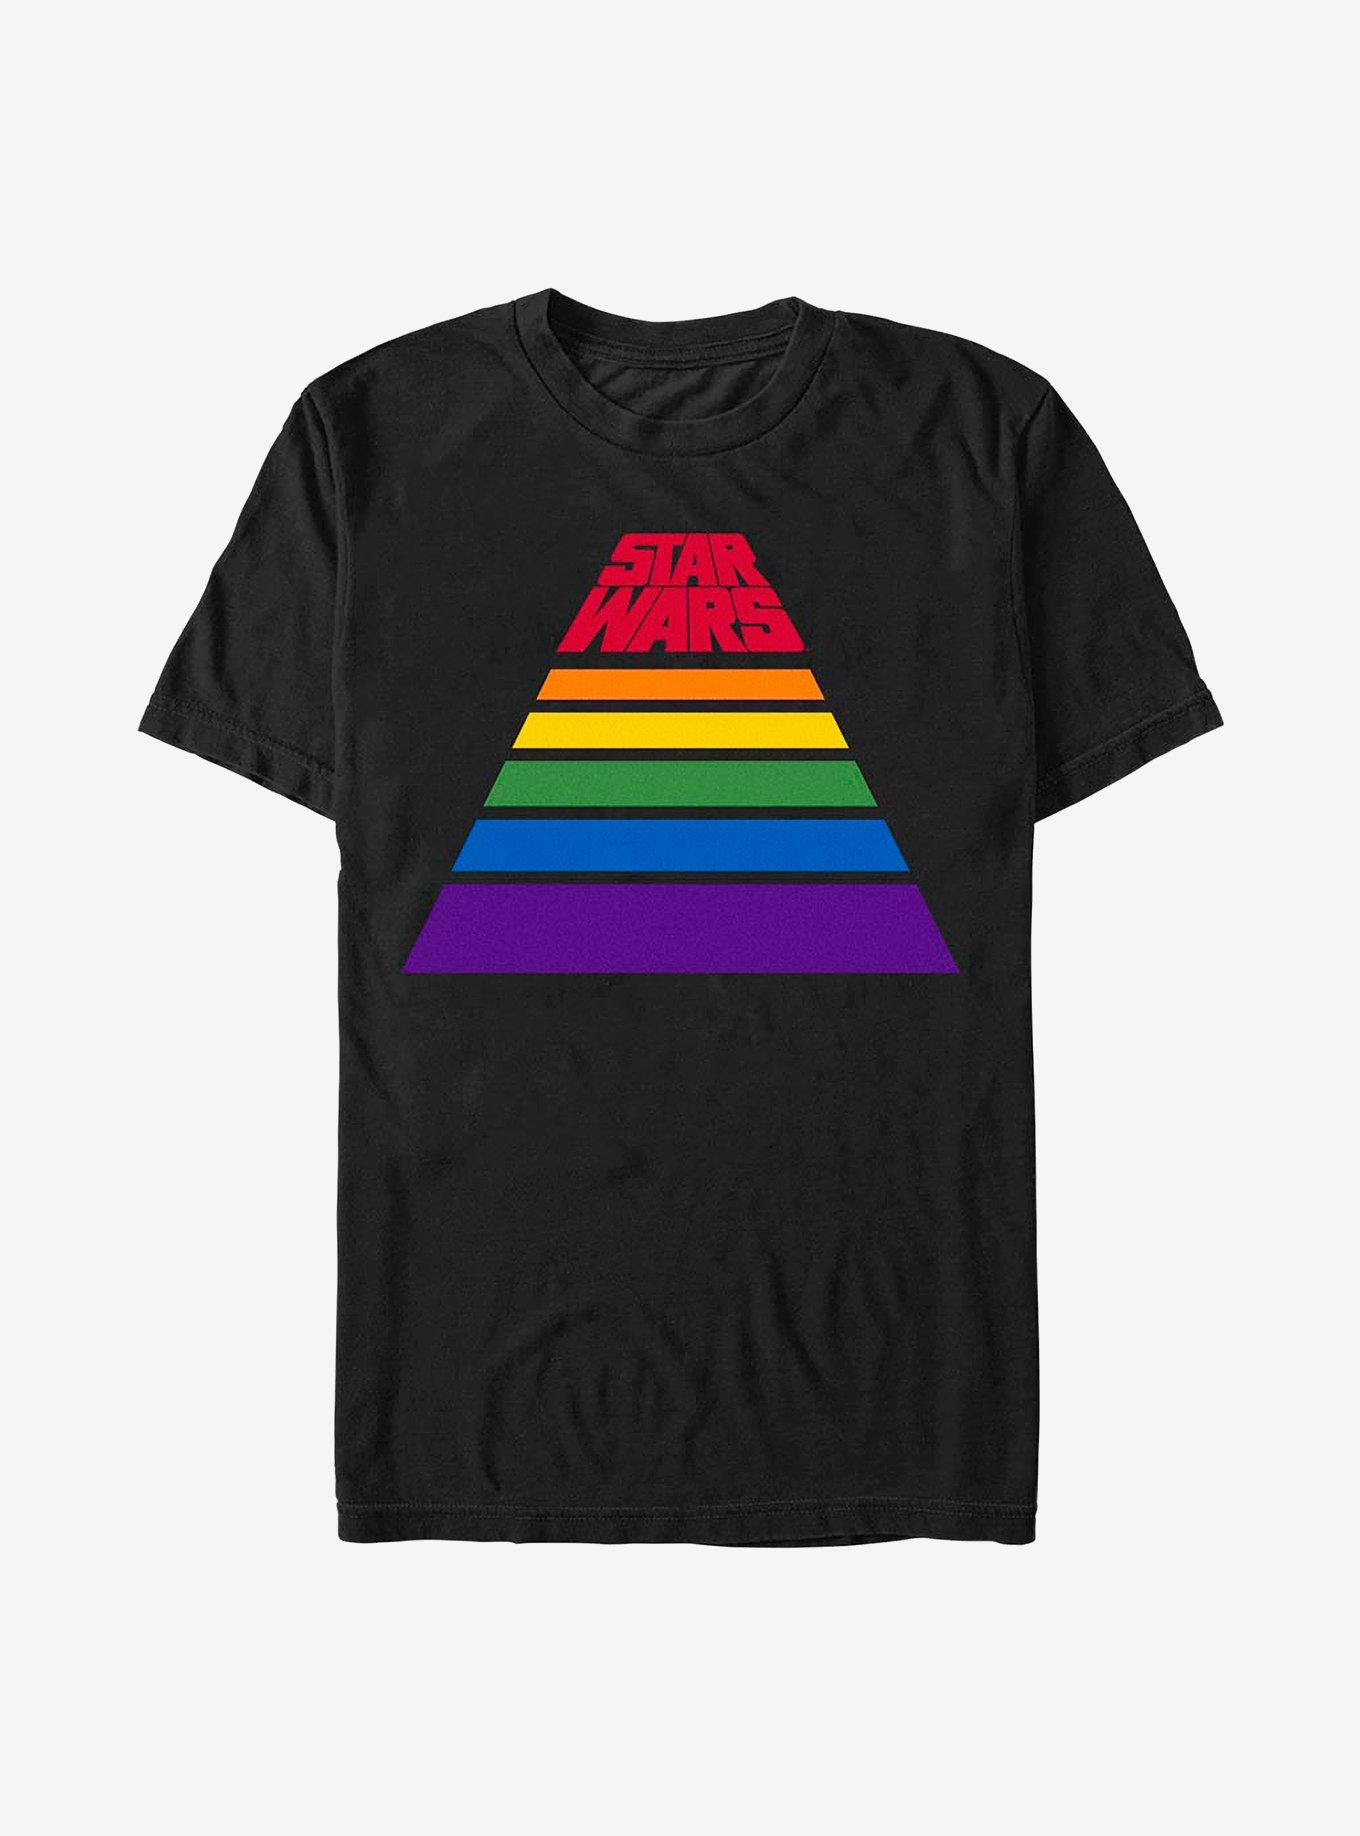 Star Wars Rainbow Classic T-Shirt